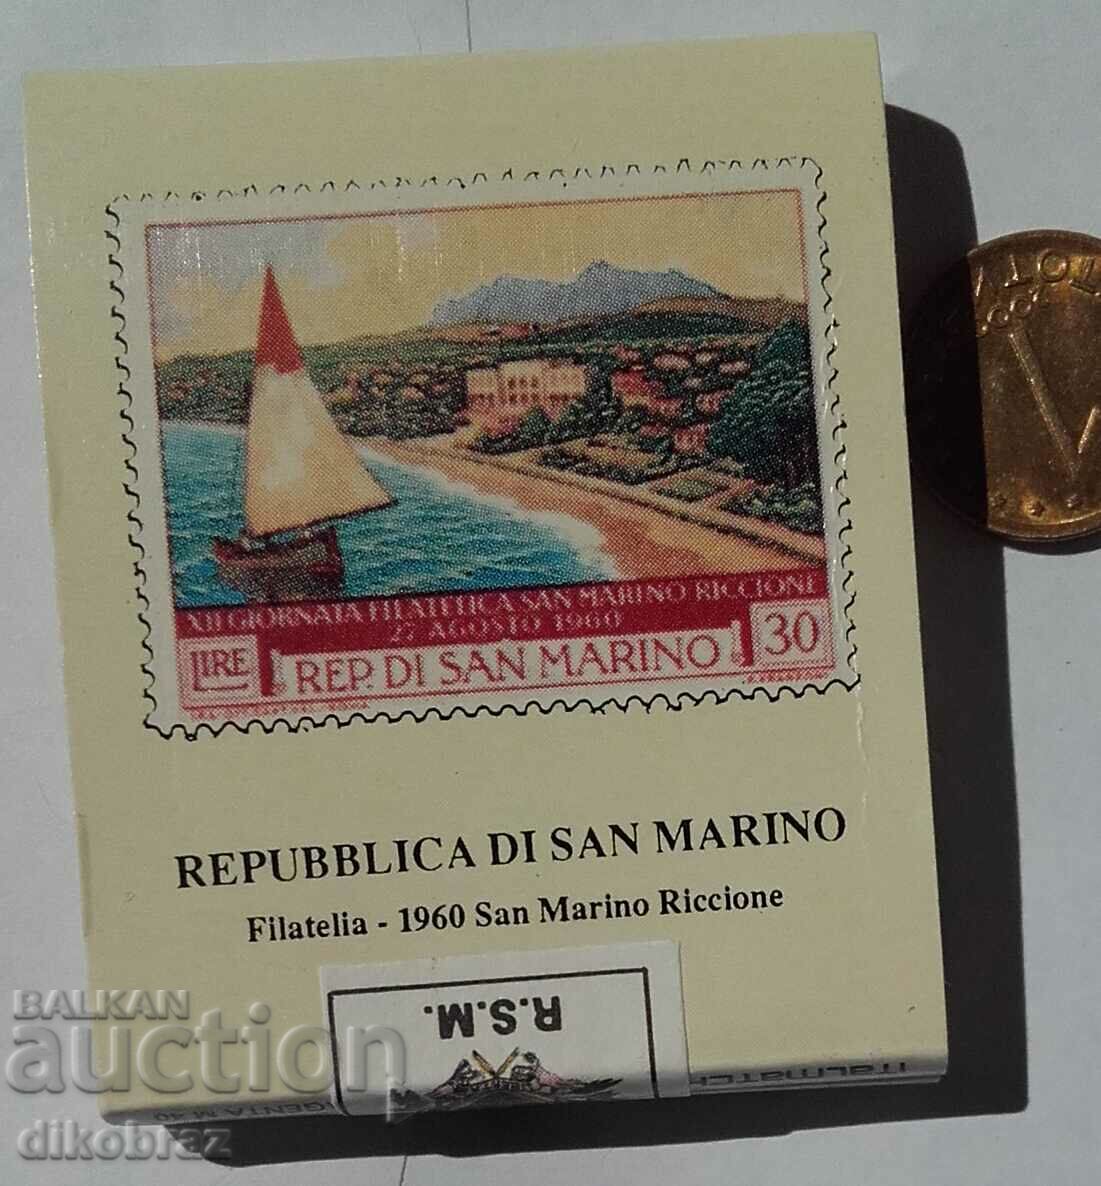 Άγιος Μαρίνος - Αγώνες με μπαντερόλ / γραμματόσημα